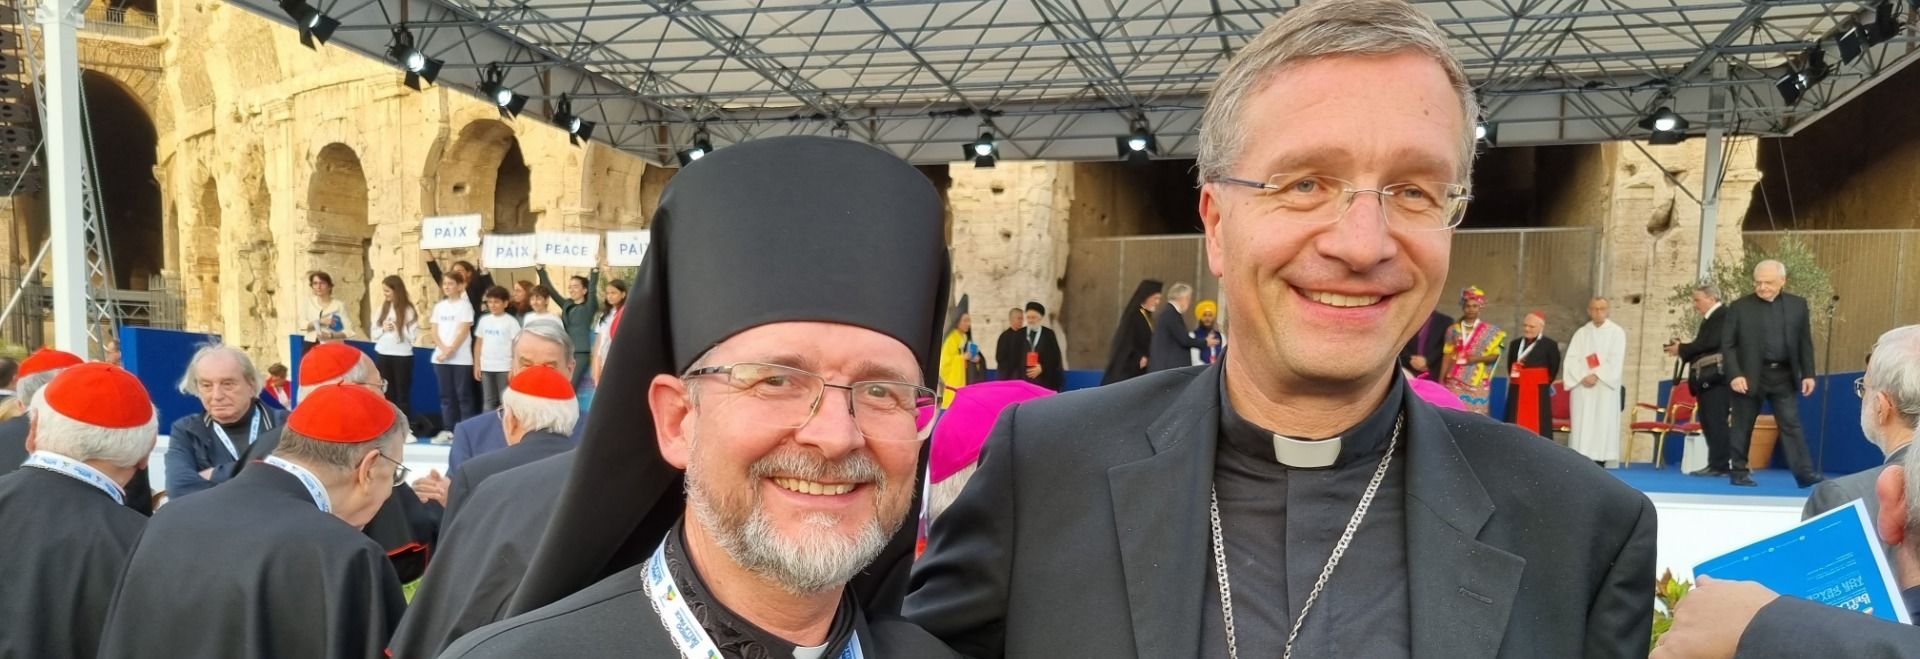 Papstbotschaft beim „Friedentreffen der Religionen“ – Bischof Gerber und ukrainischer Bischof bei Abschlusskundgebung in Rom